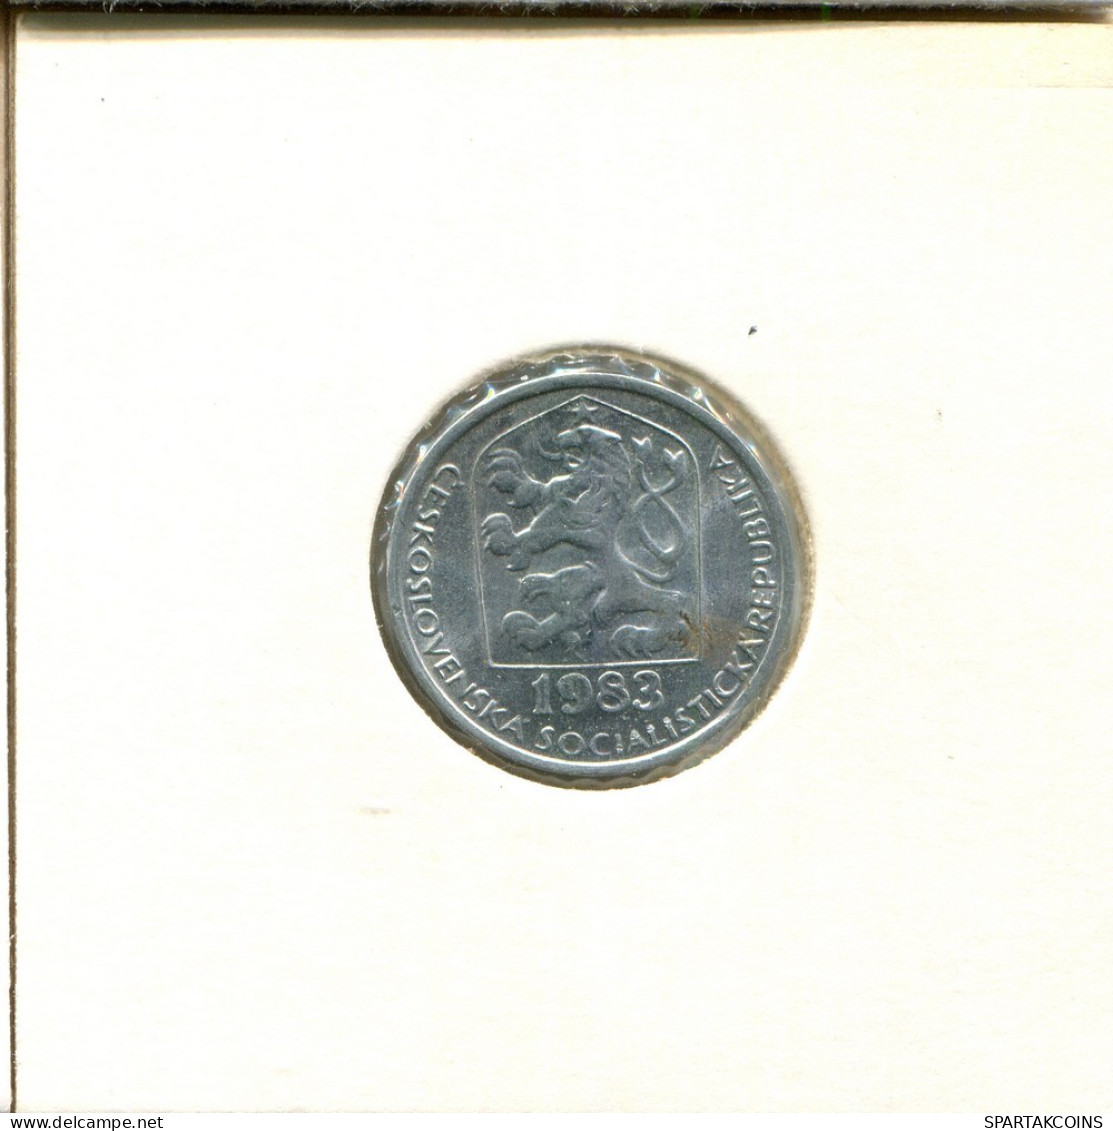 10 HALERU 1983 CHECOSLOVAQUIA CZECHOESLOVAQUIA SLOVAKIA Moneda #AS939.E.A - Tchécoslovaquie